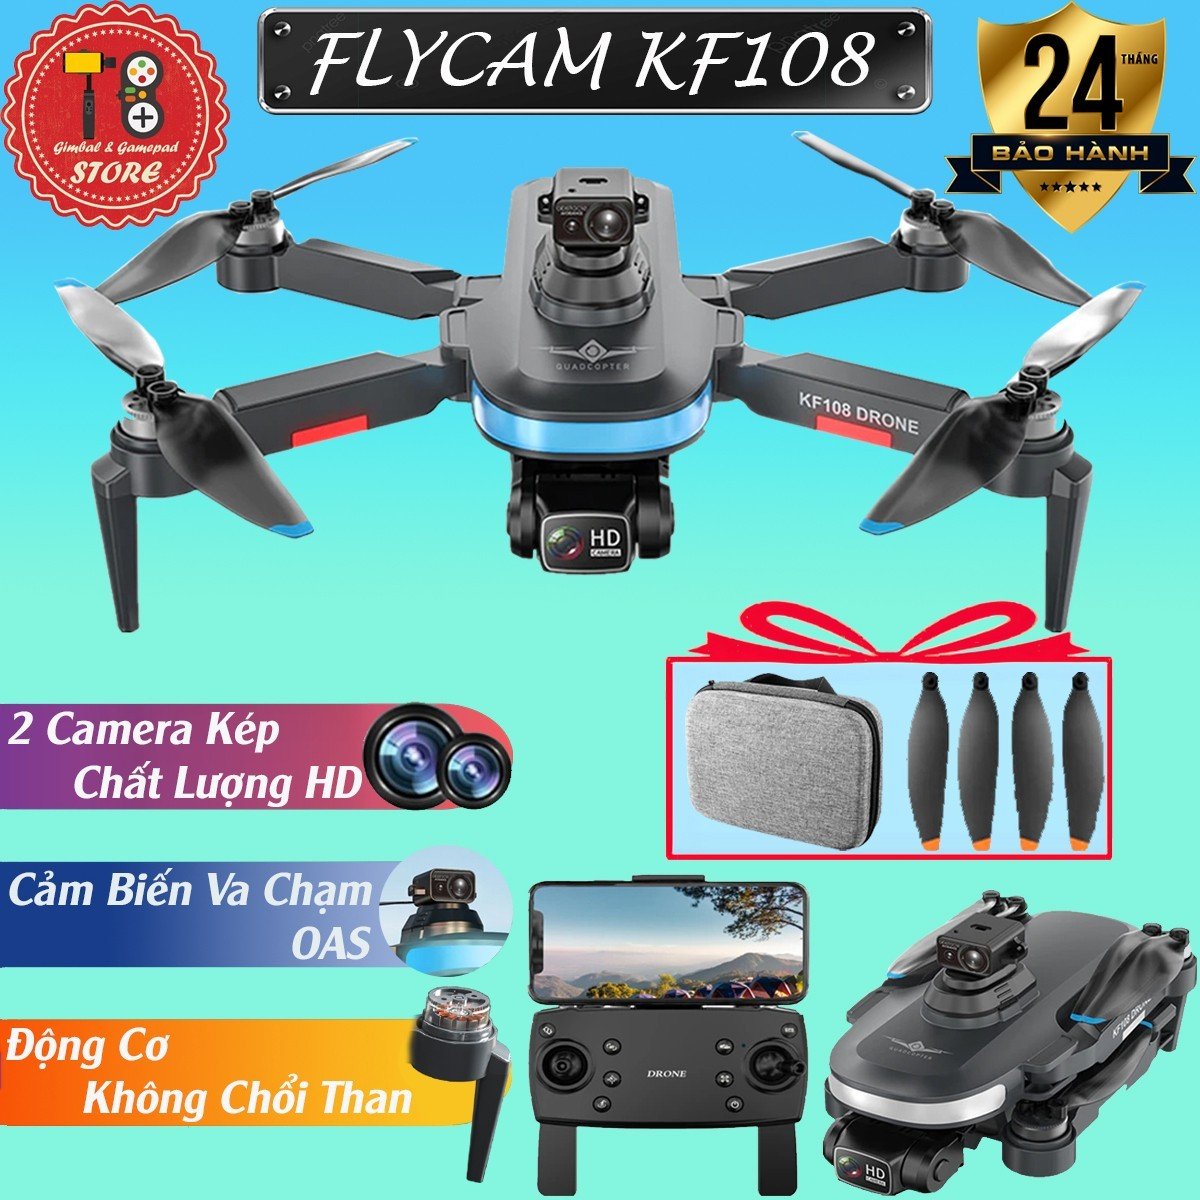 Flycam KF108 tích hợp cảm biến OAS, Flaycam mini động cơ không chổi than, 2 camera HD quay phim, chụp ảnh, flycam giá siêu rẻ rẻ hơn AE3, Mavic 2